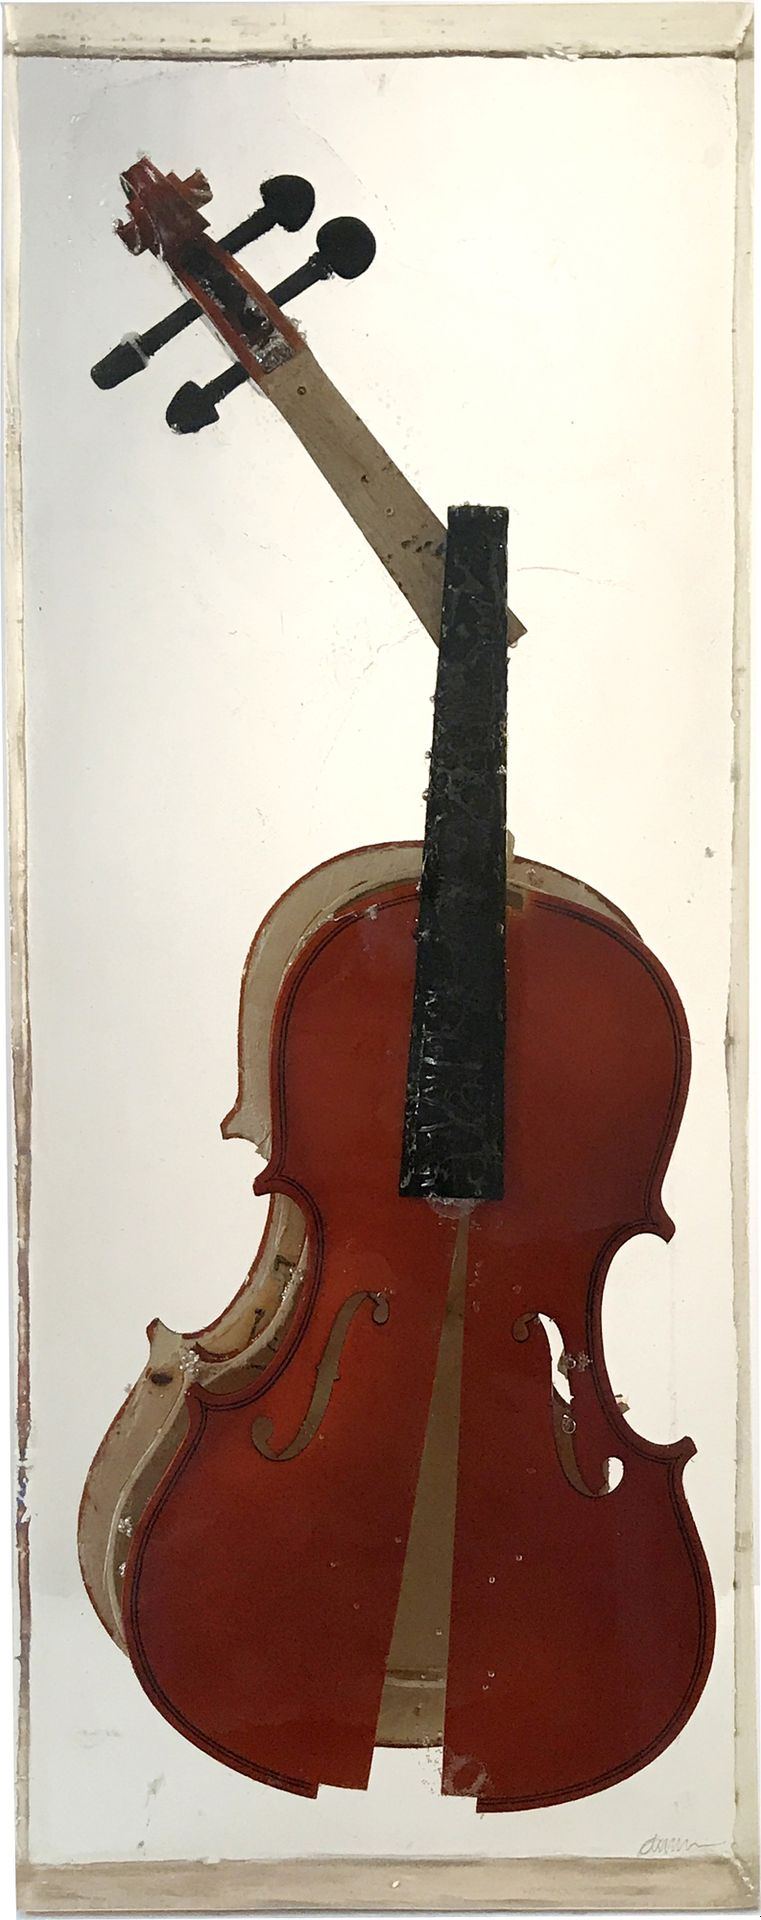 ARMAN (1928-2005) Violine en éventail, 2005
Einschluss einer Geige in Polyesterh&hellip;